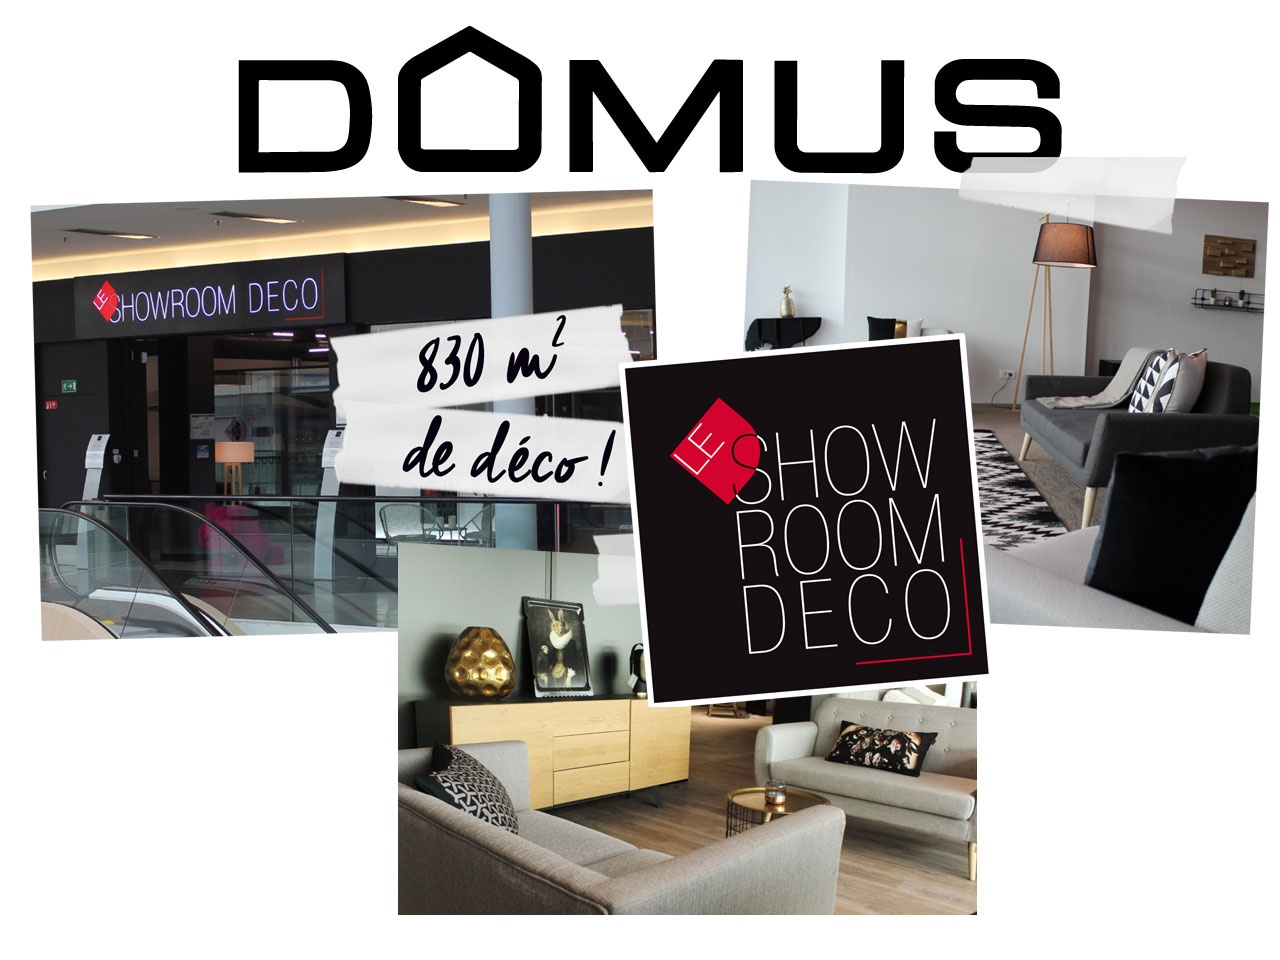 DOMUS ouvre son premier showroom déco